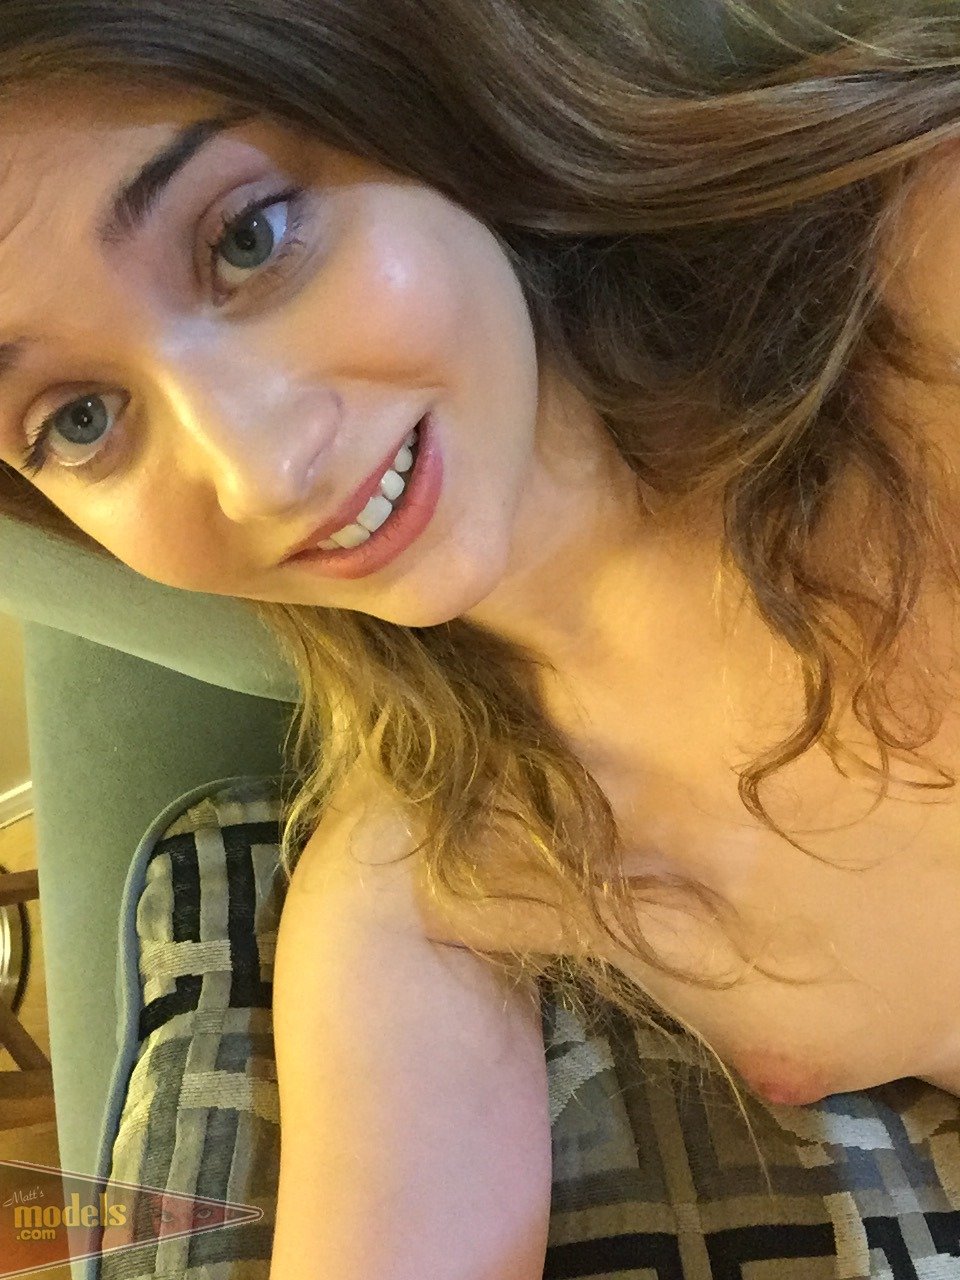 Petite Teen Ariel Mc Gwire Makes Her Nude Modeling Debut In Bathroom Selfies